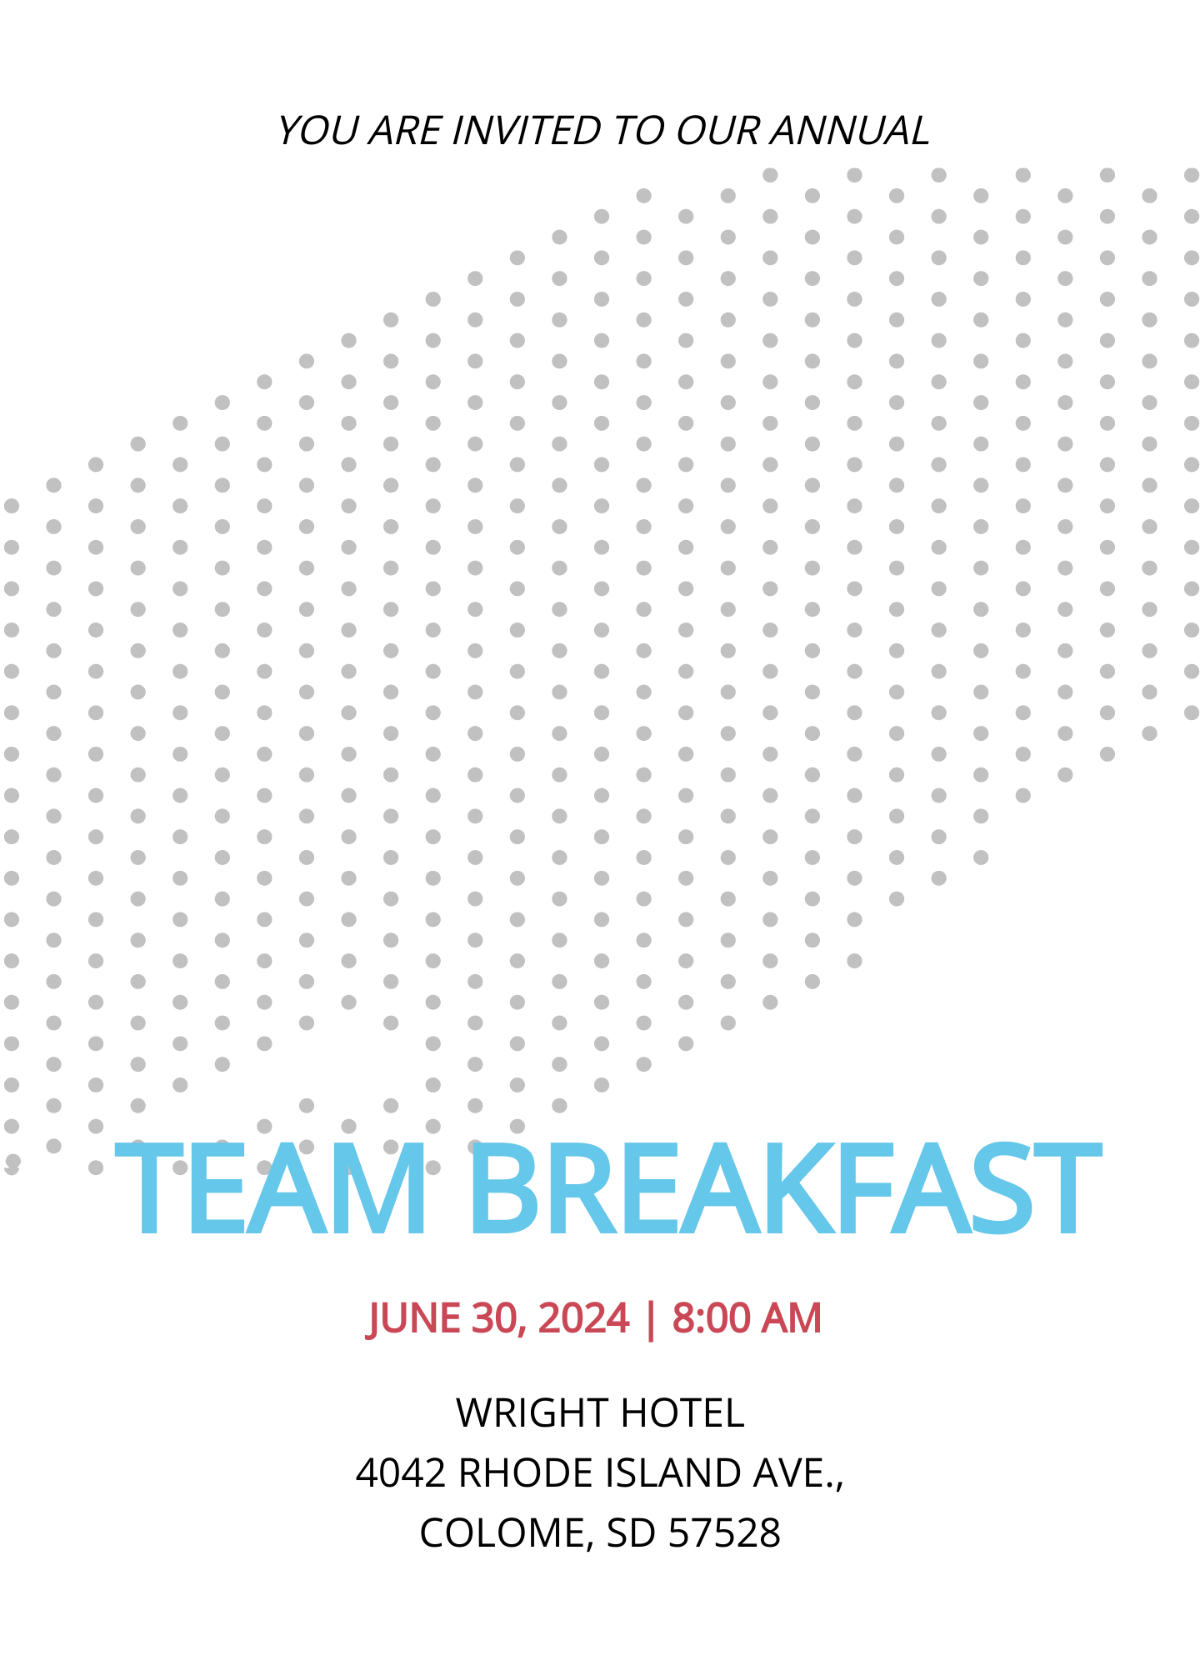 Team Breakfast Invitation Template